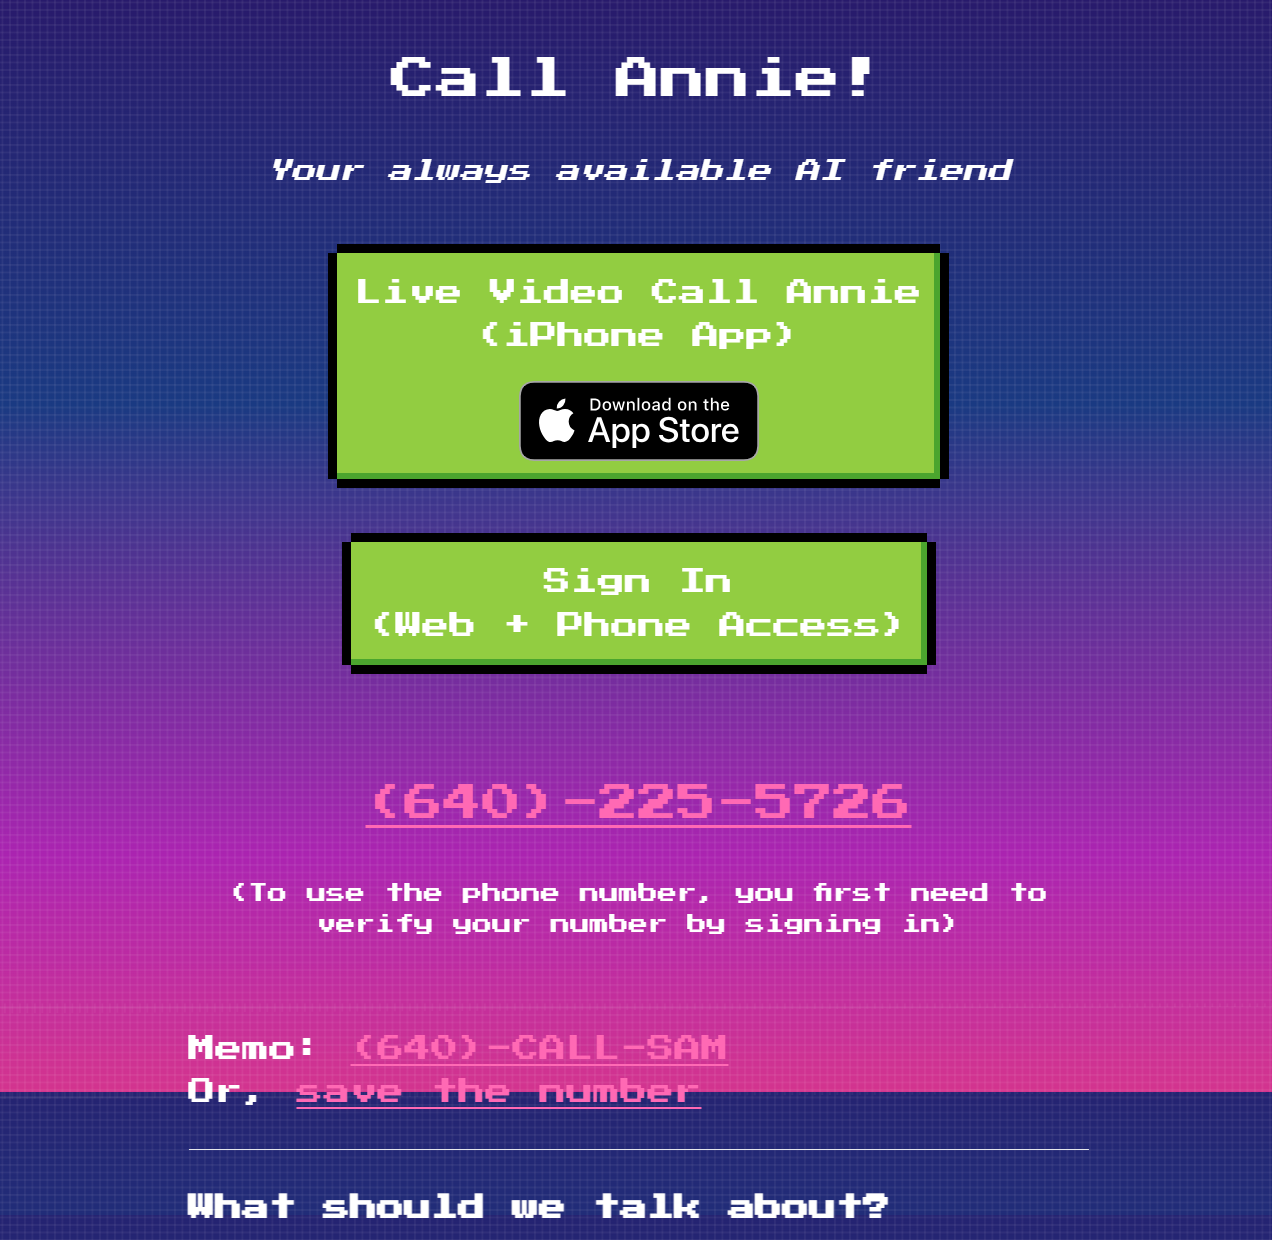 Call Annie